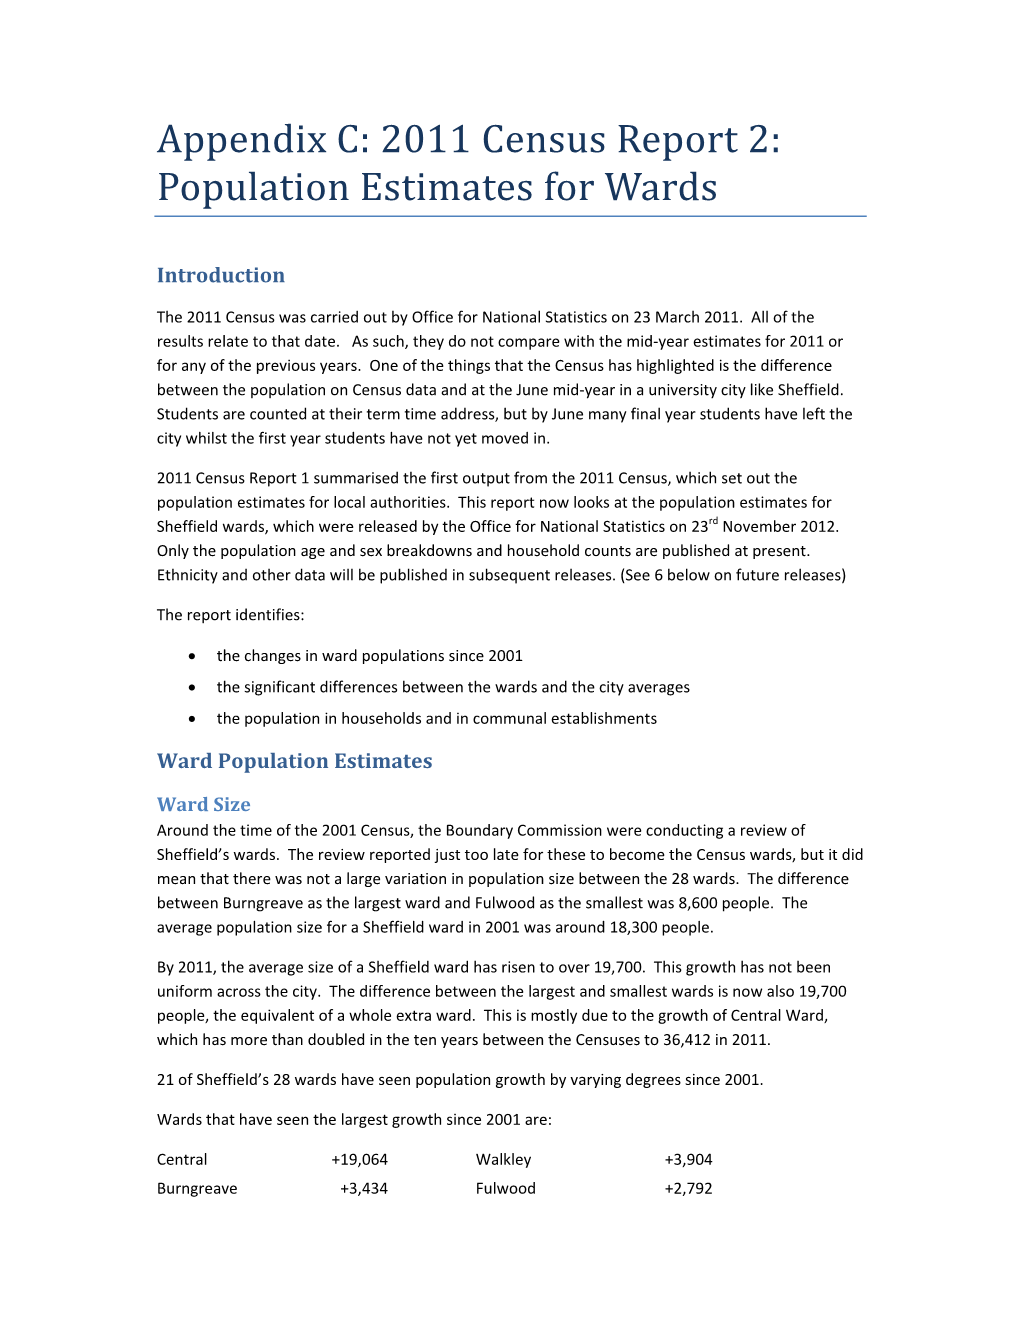 Population Estimates for Wards